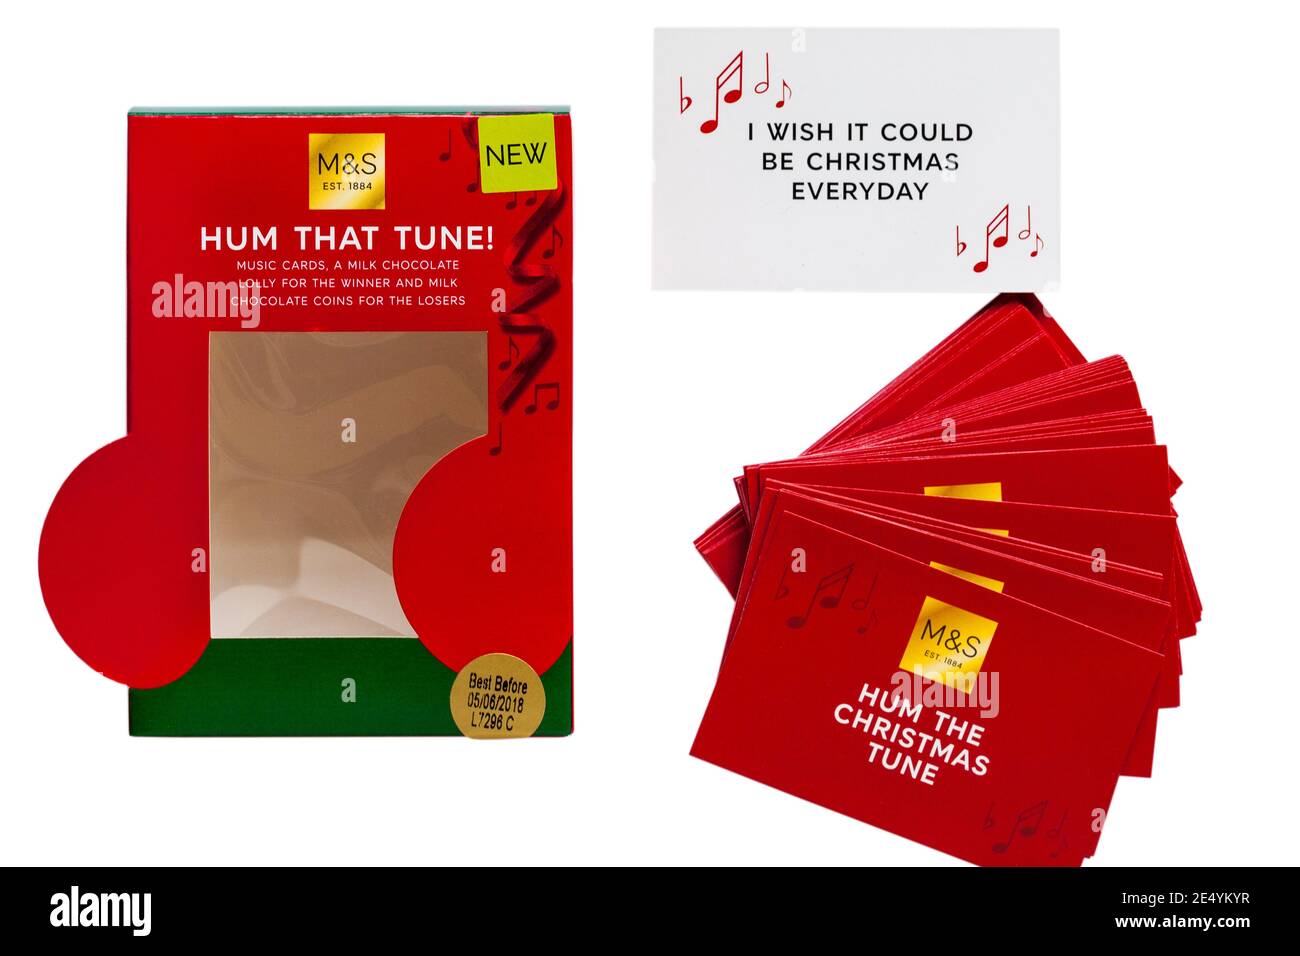 M&S Hum Tune juego con Hum the Christmas Tune tarjetas quitadas de la caja sobre fondo blanco - I Ojalá pudiera ser Navidad todos los días Foto de stock